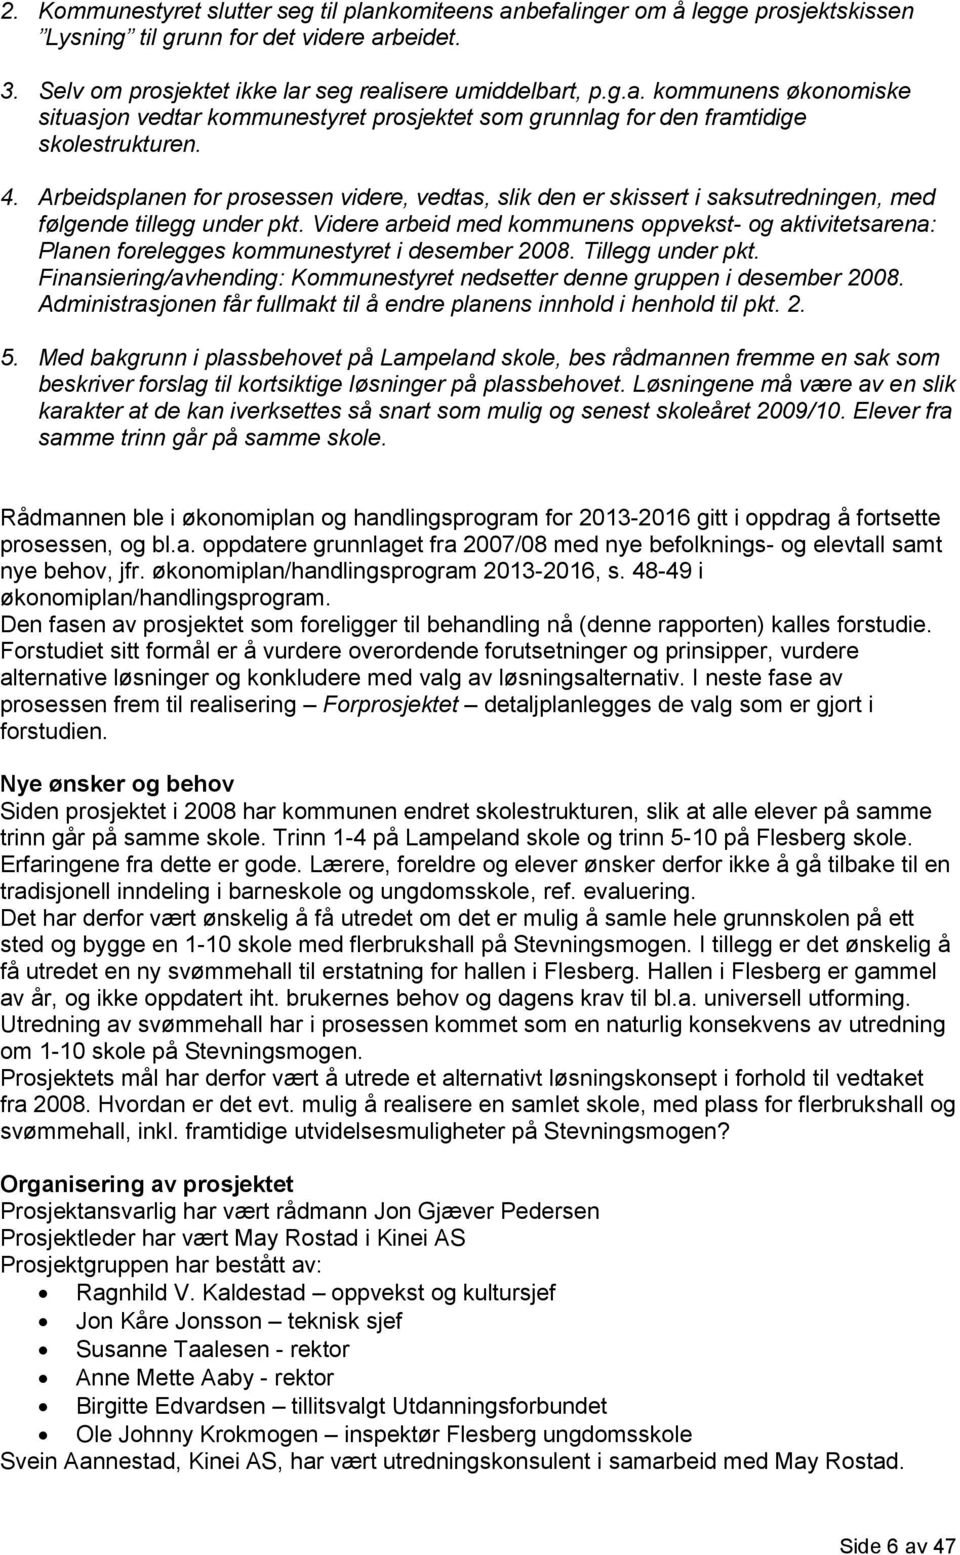 Videre arbeid med kommunens oppvekst- og aktivitetsarena: Planen forelegges kommunestyret i desember 2008. Tillegg under pkt.